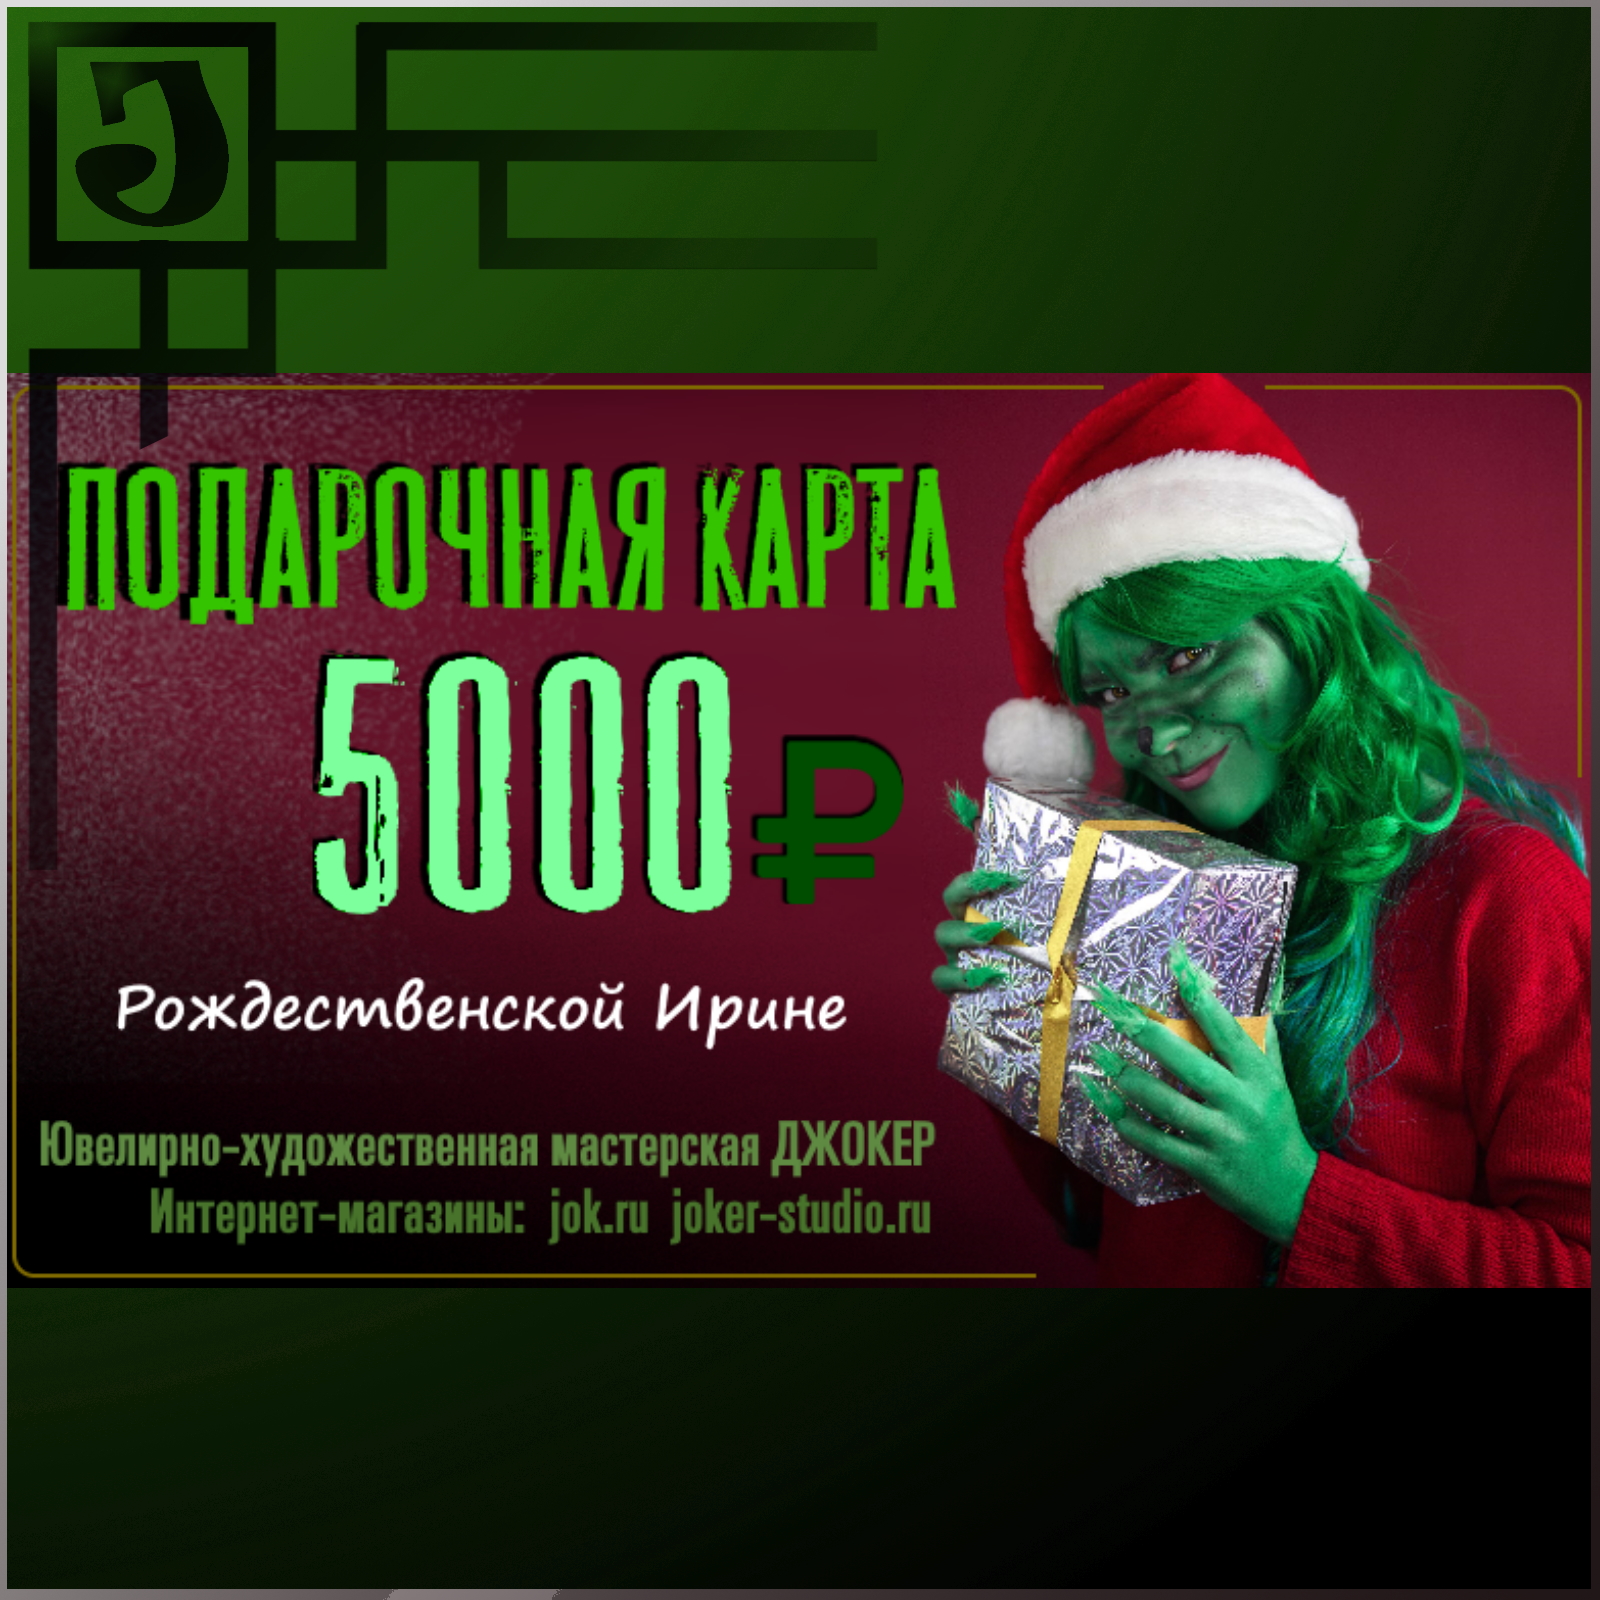 подарочная карта 5000 рублей joker-studio